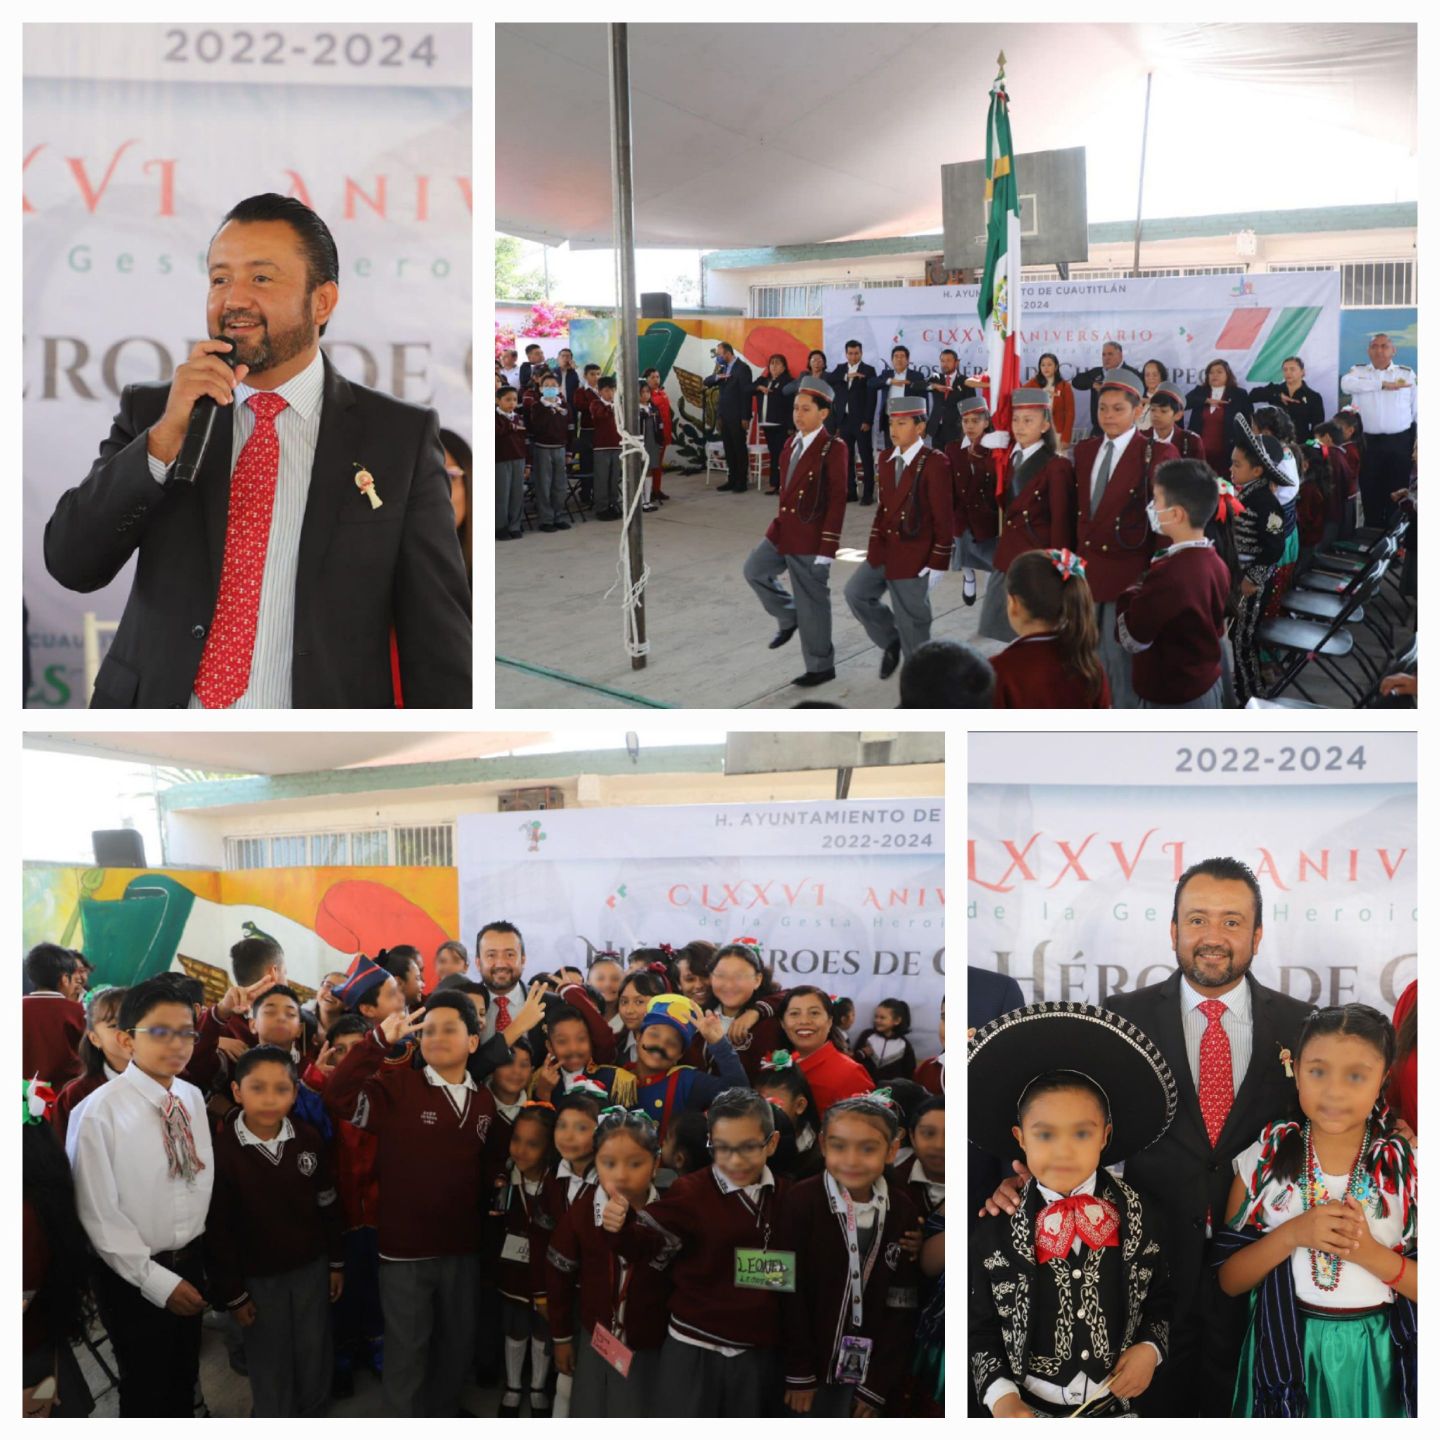 Aldo Ledezma conmemoró el CLXXVI aniversario de la Gesta Heroica de los niños de Chapultepec
